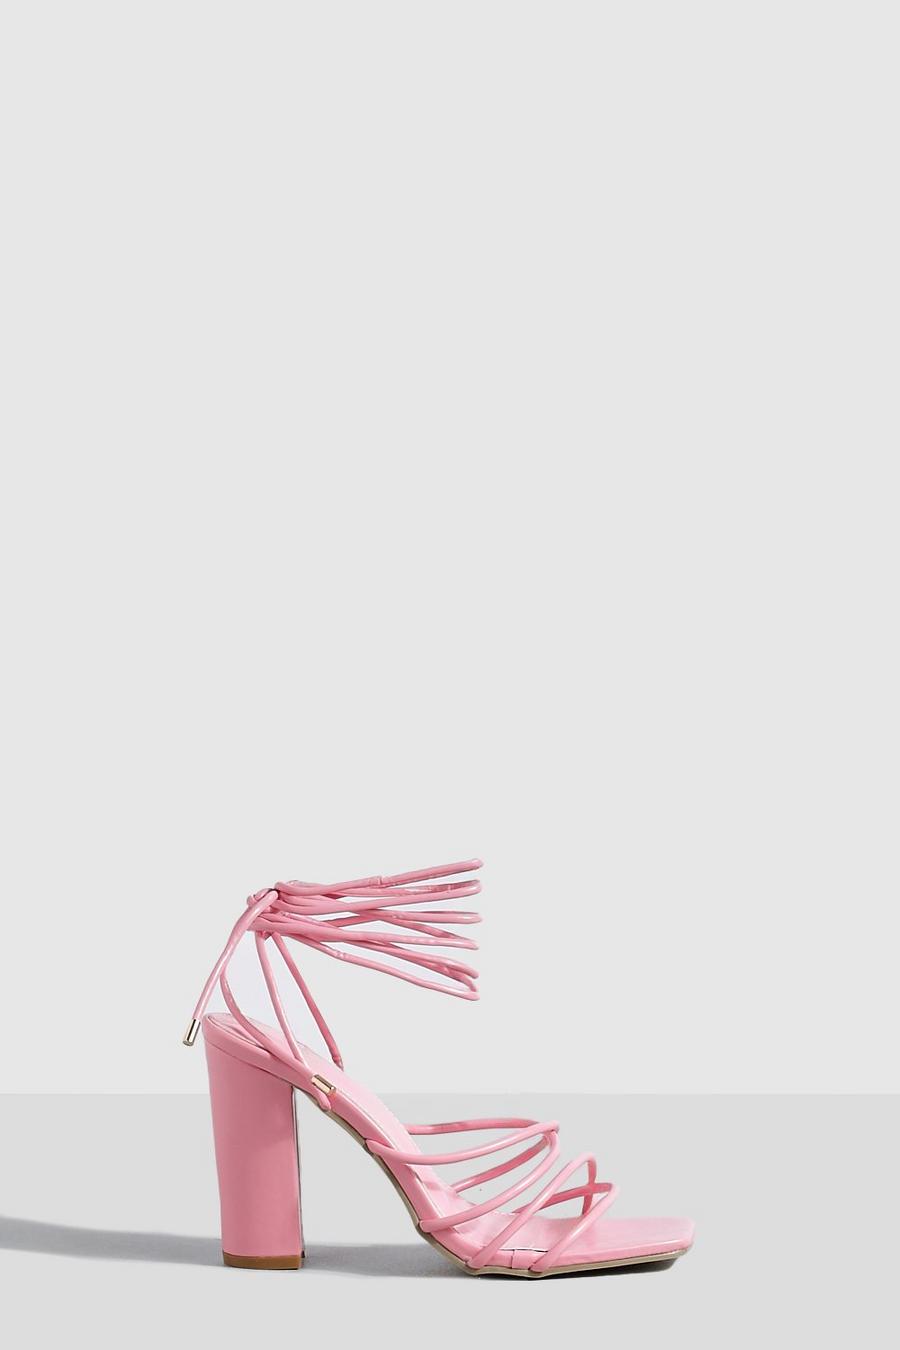 Riemchen-Sandalen mit Blockabsatz, Pink rose